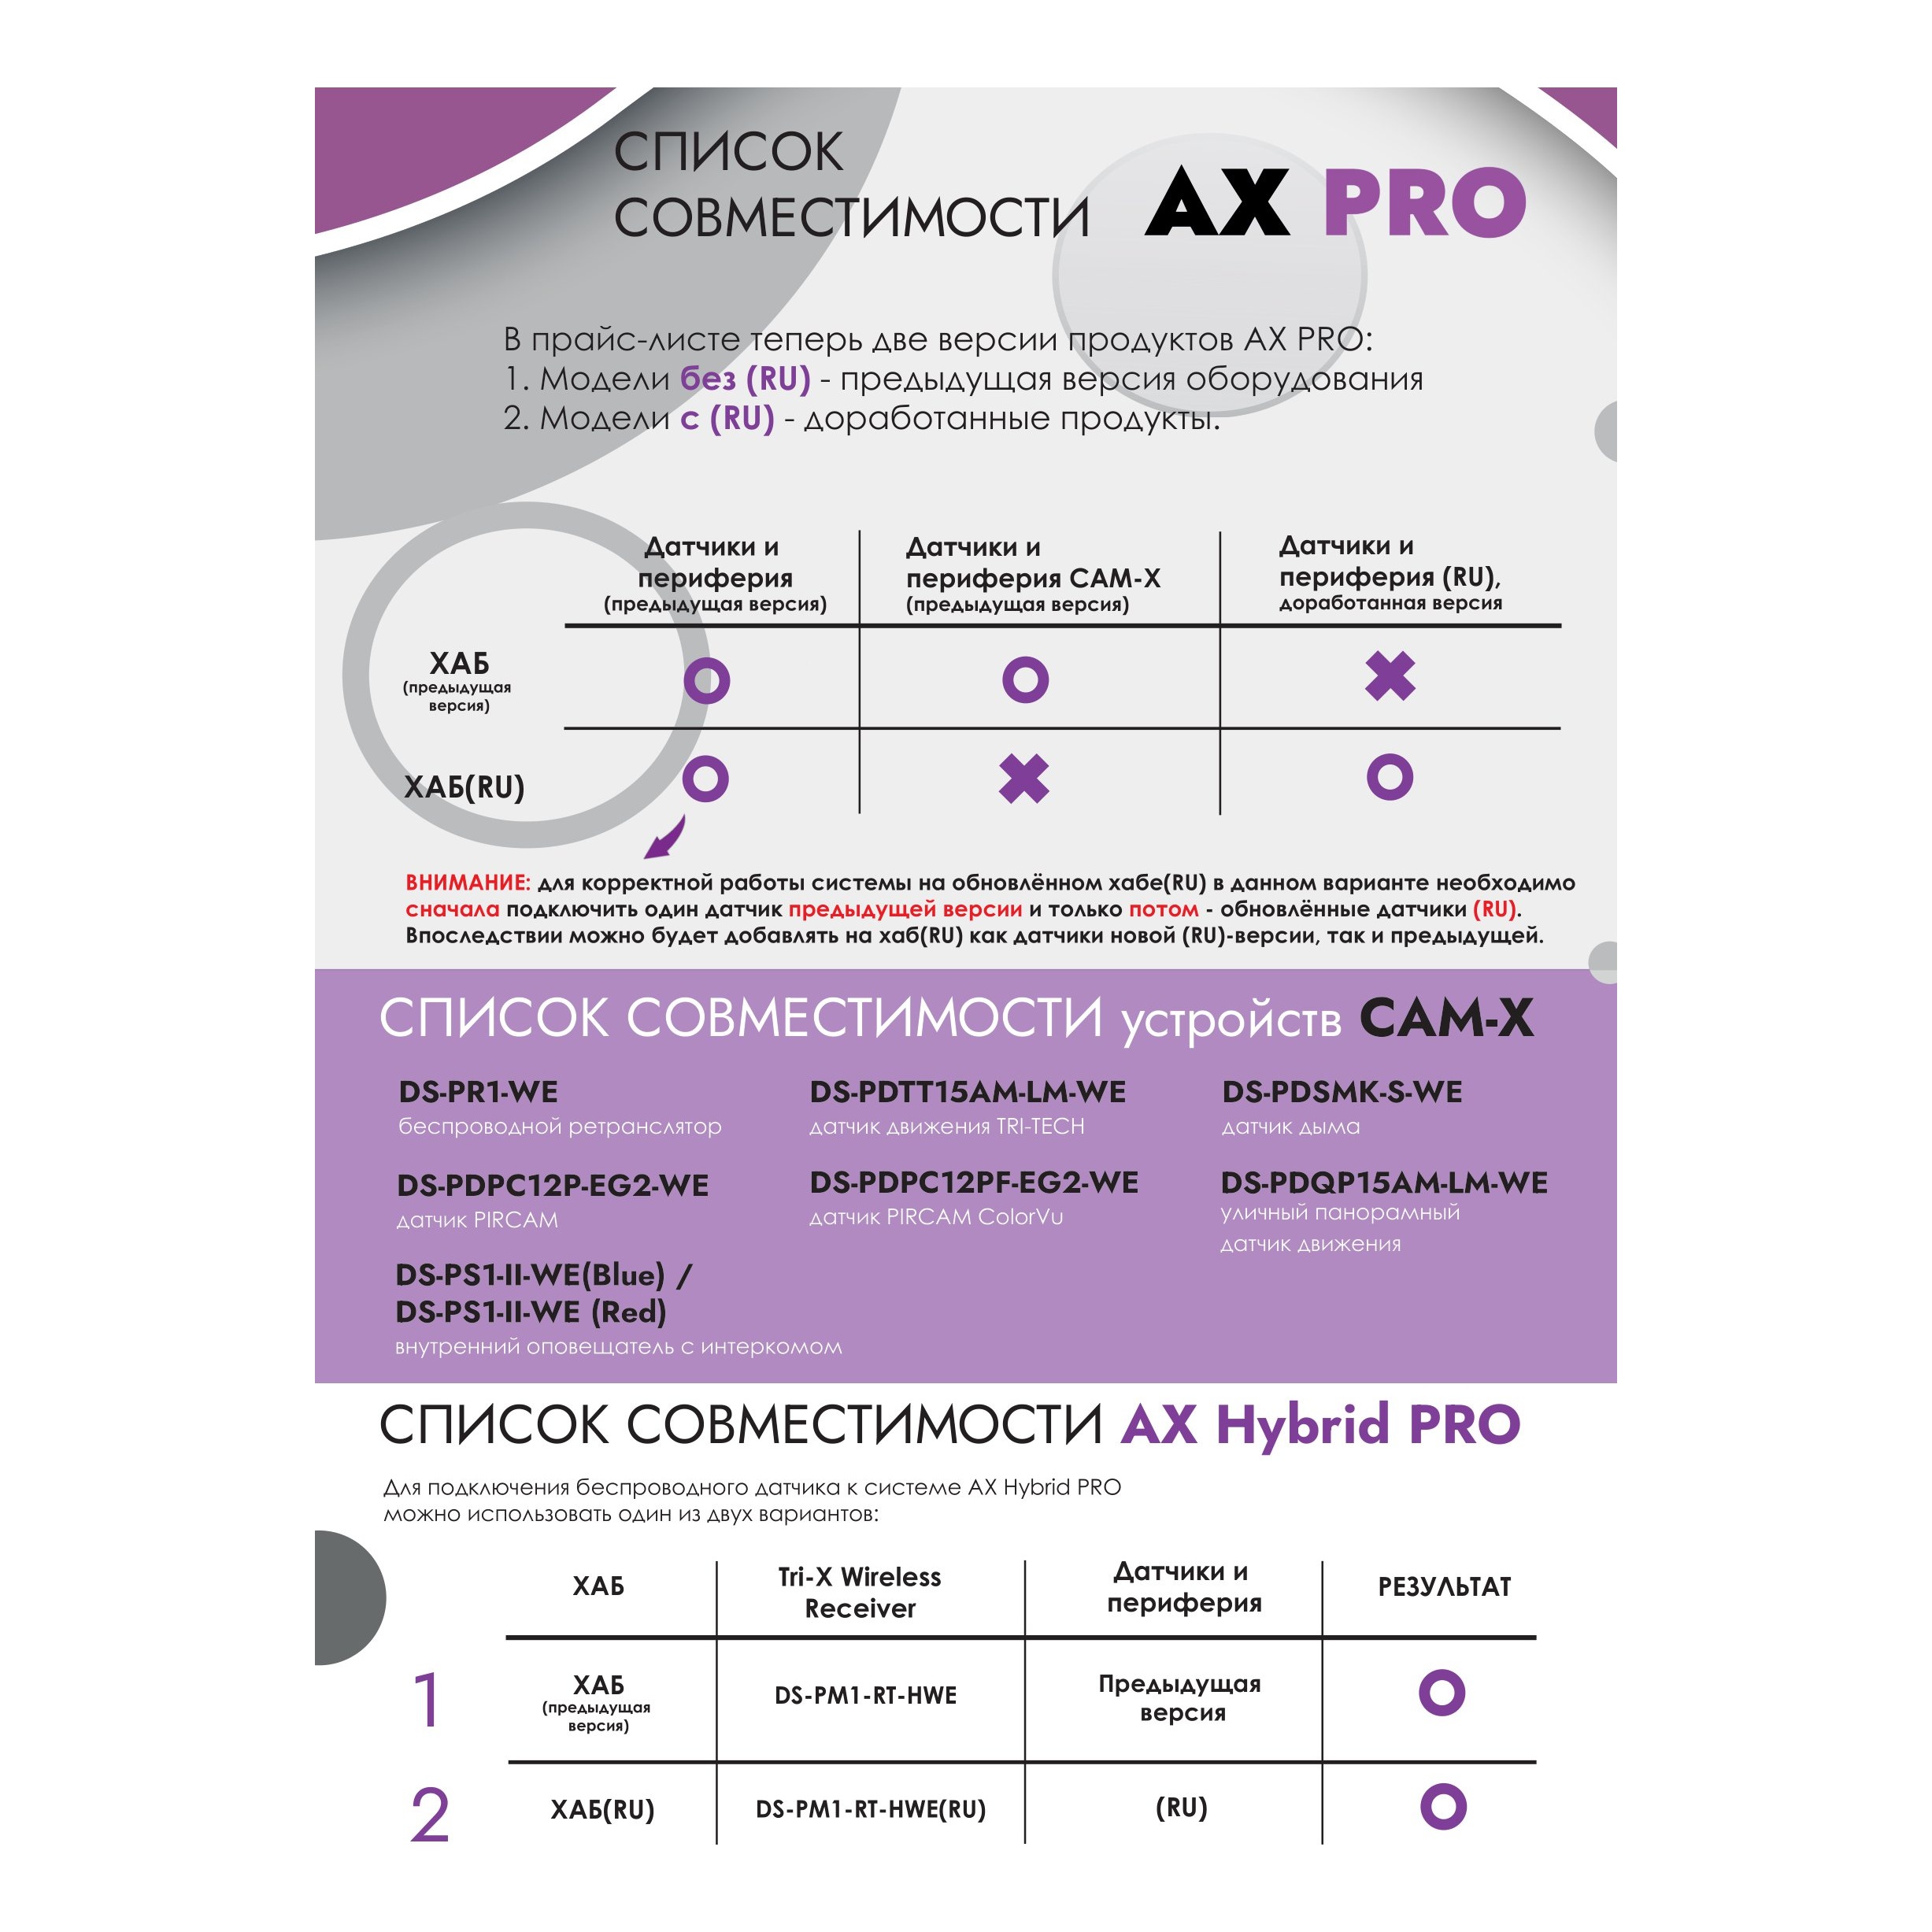 Hikvision AX PRO DS-PDPG12P-EG2 PIR датчик с детекцией разбития стекла (2 в 1)